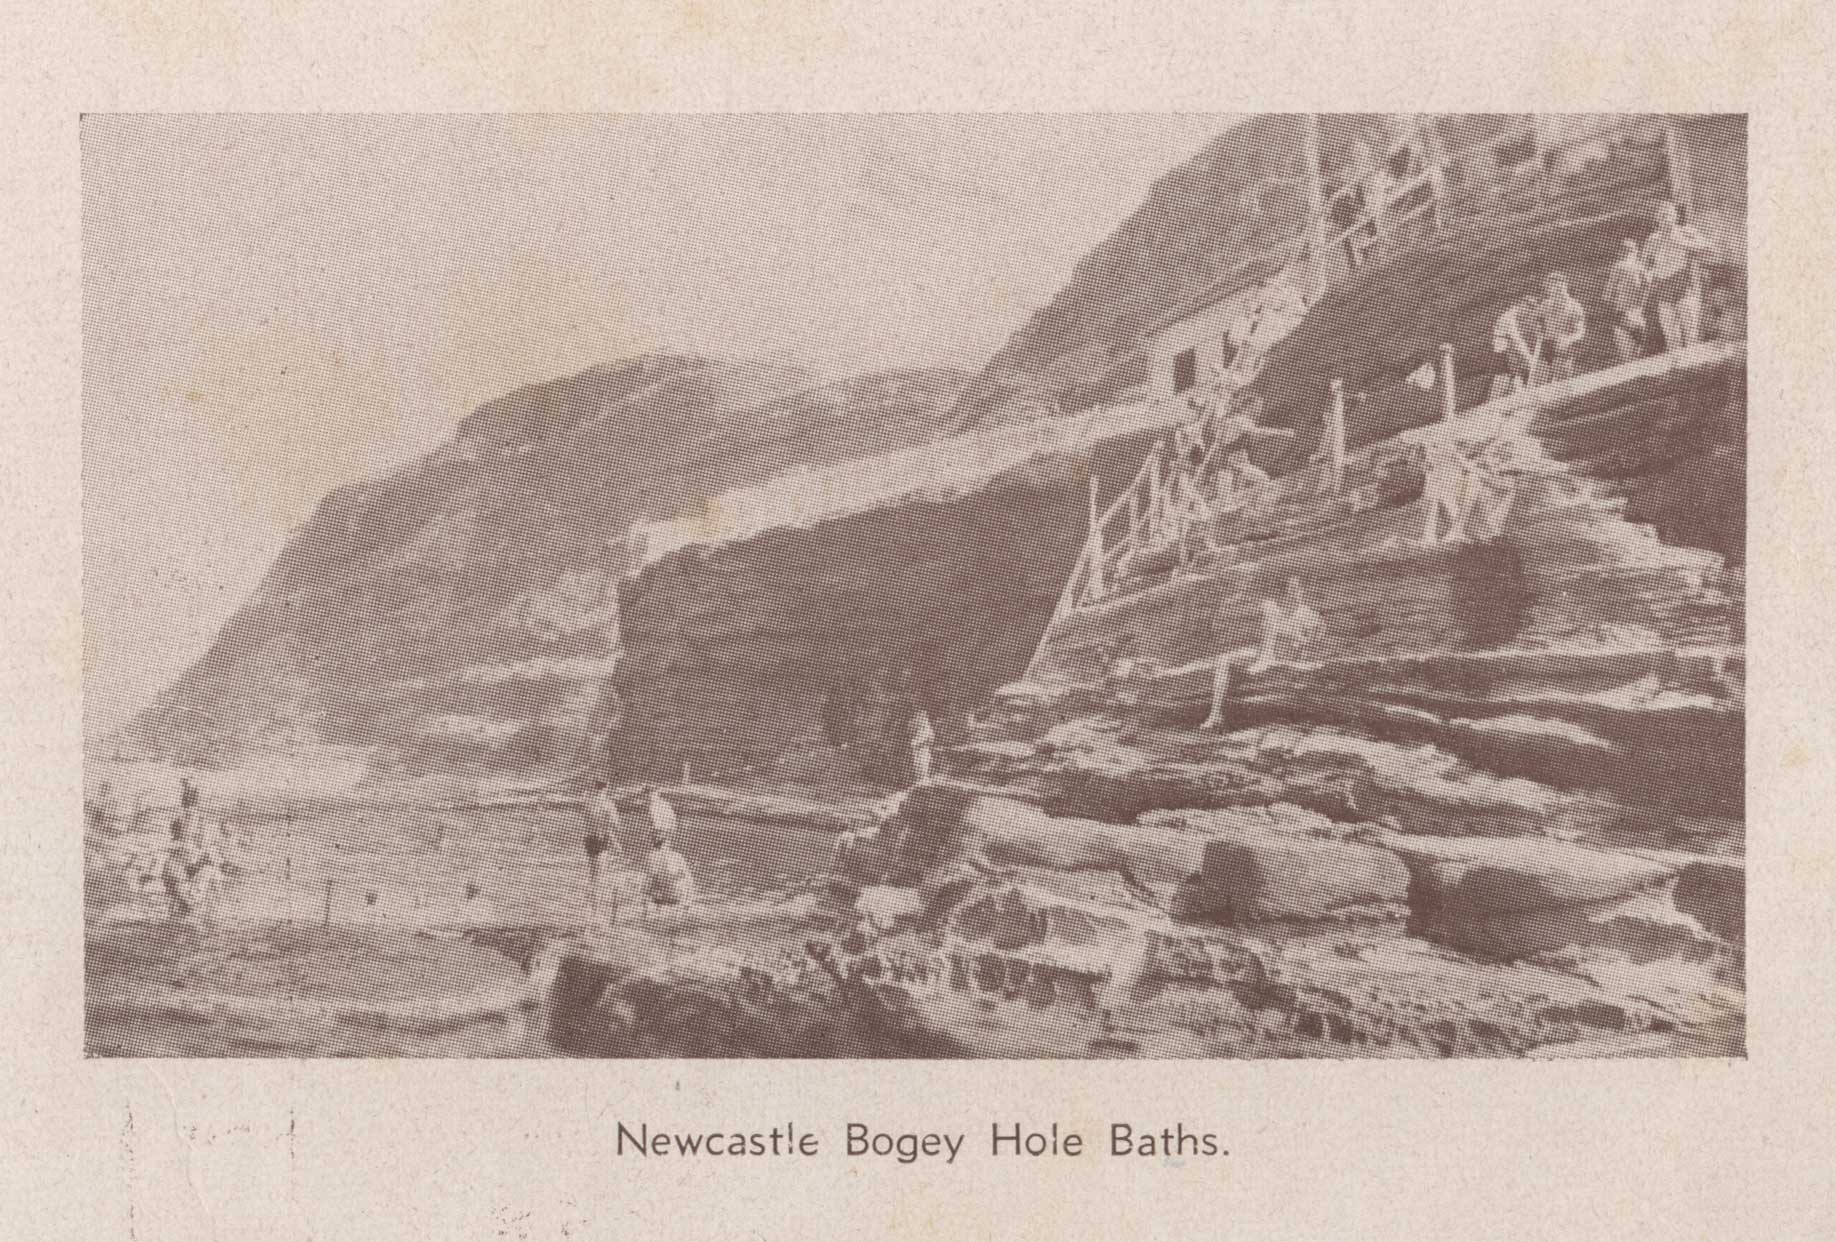 The Bogey Hole Baths (1938)